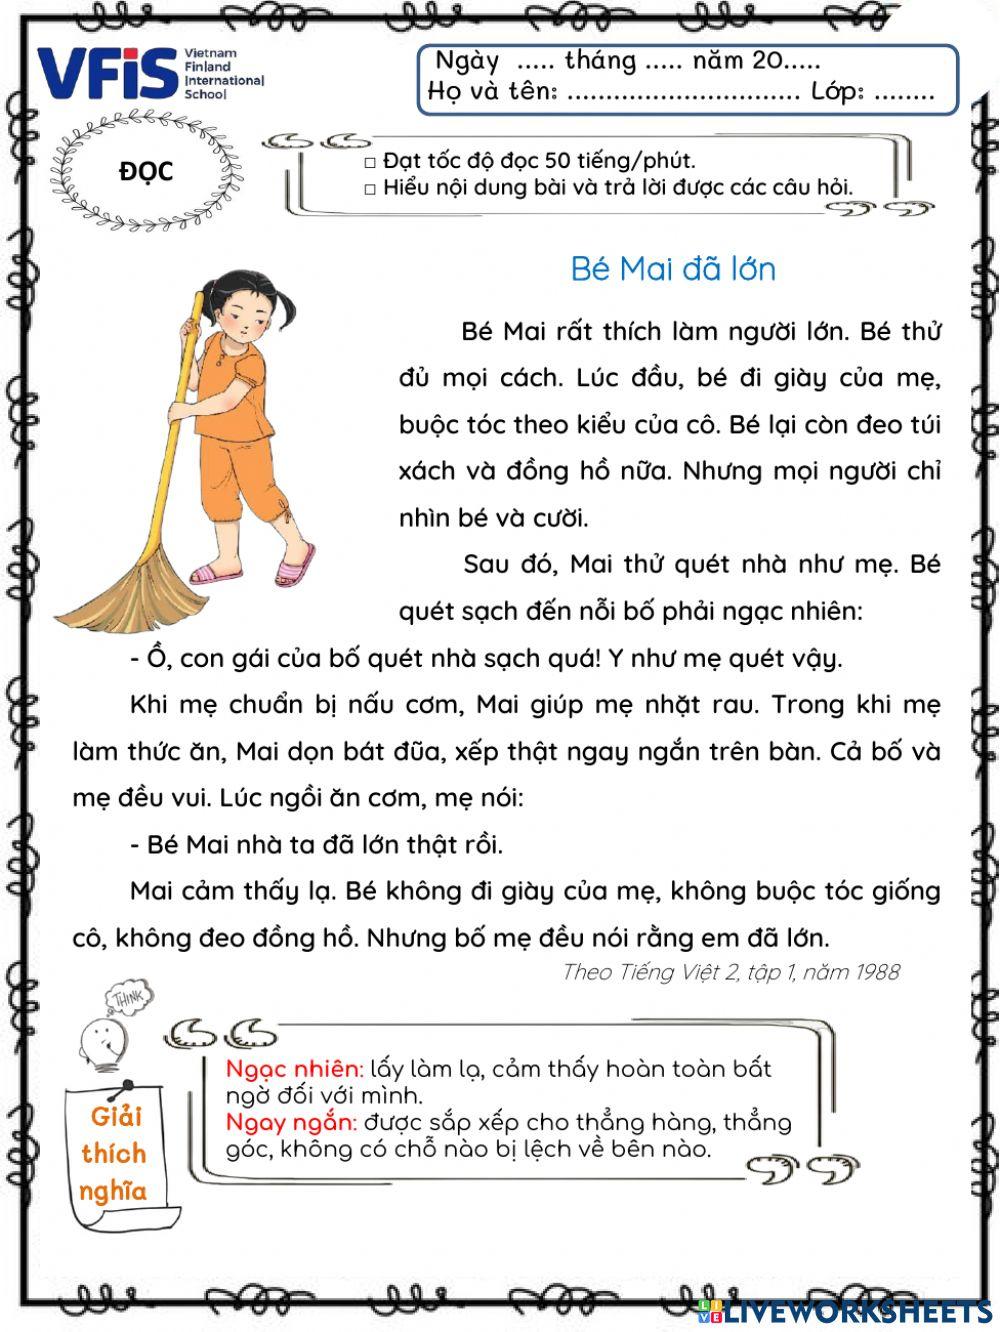 Vietnamese Week 1 - Tập đọc